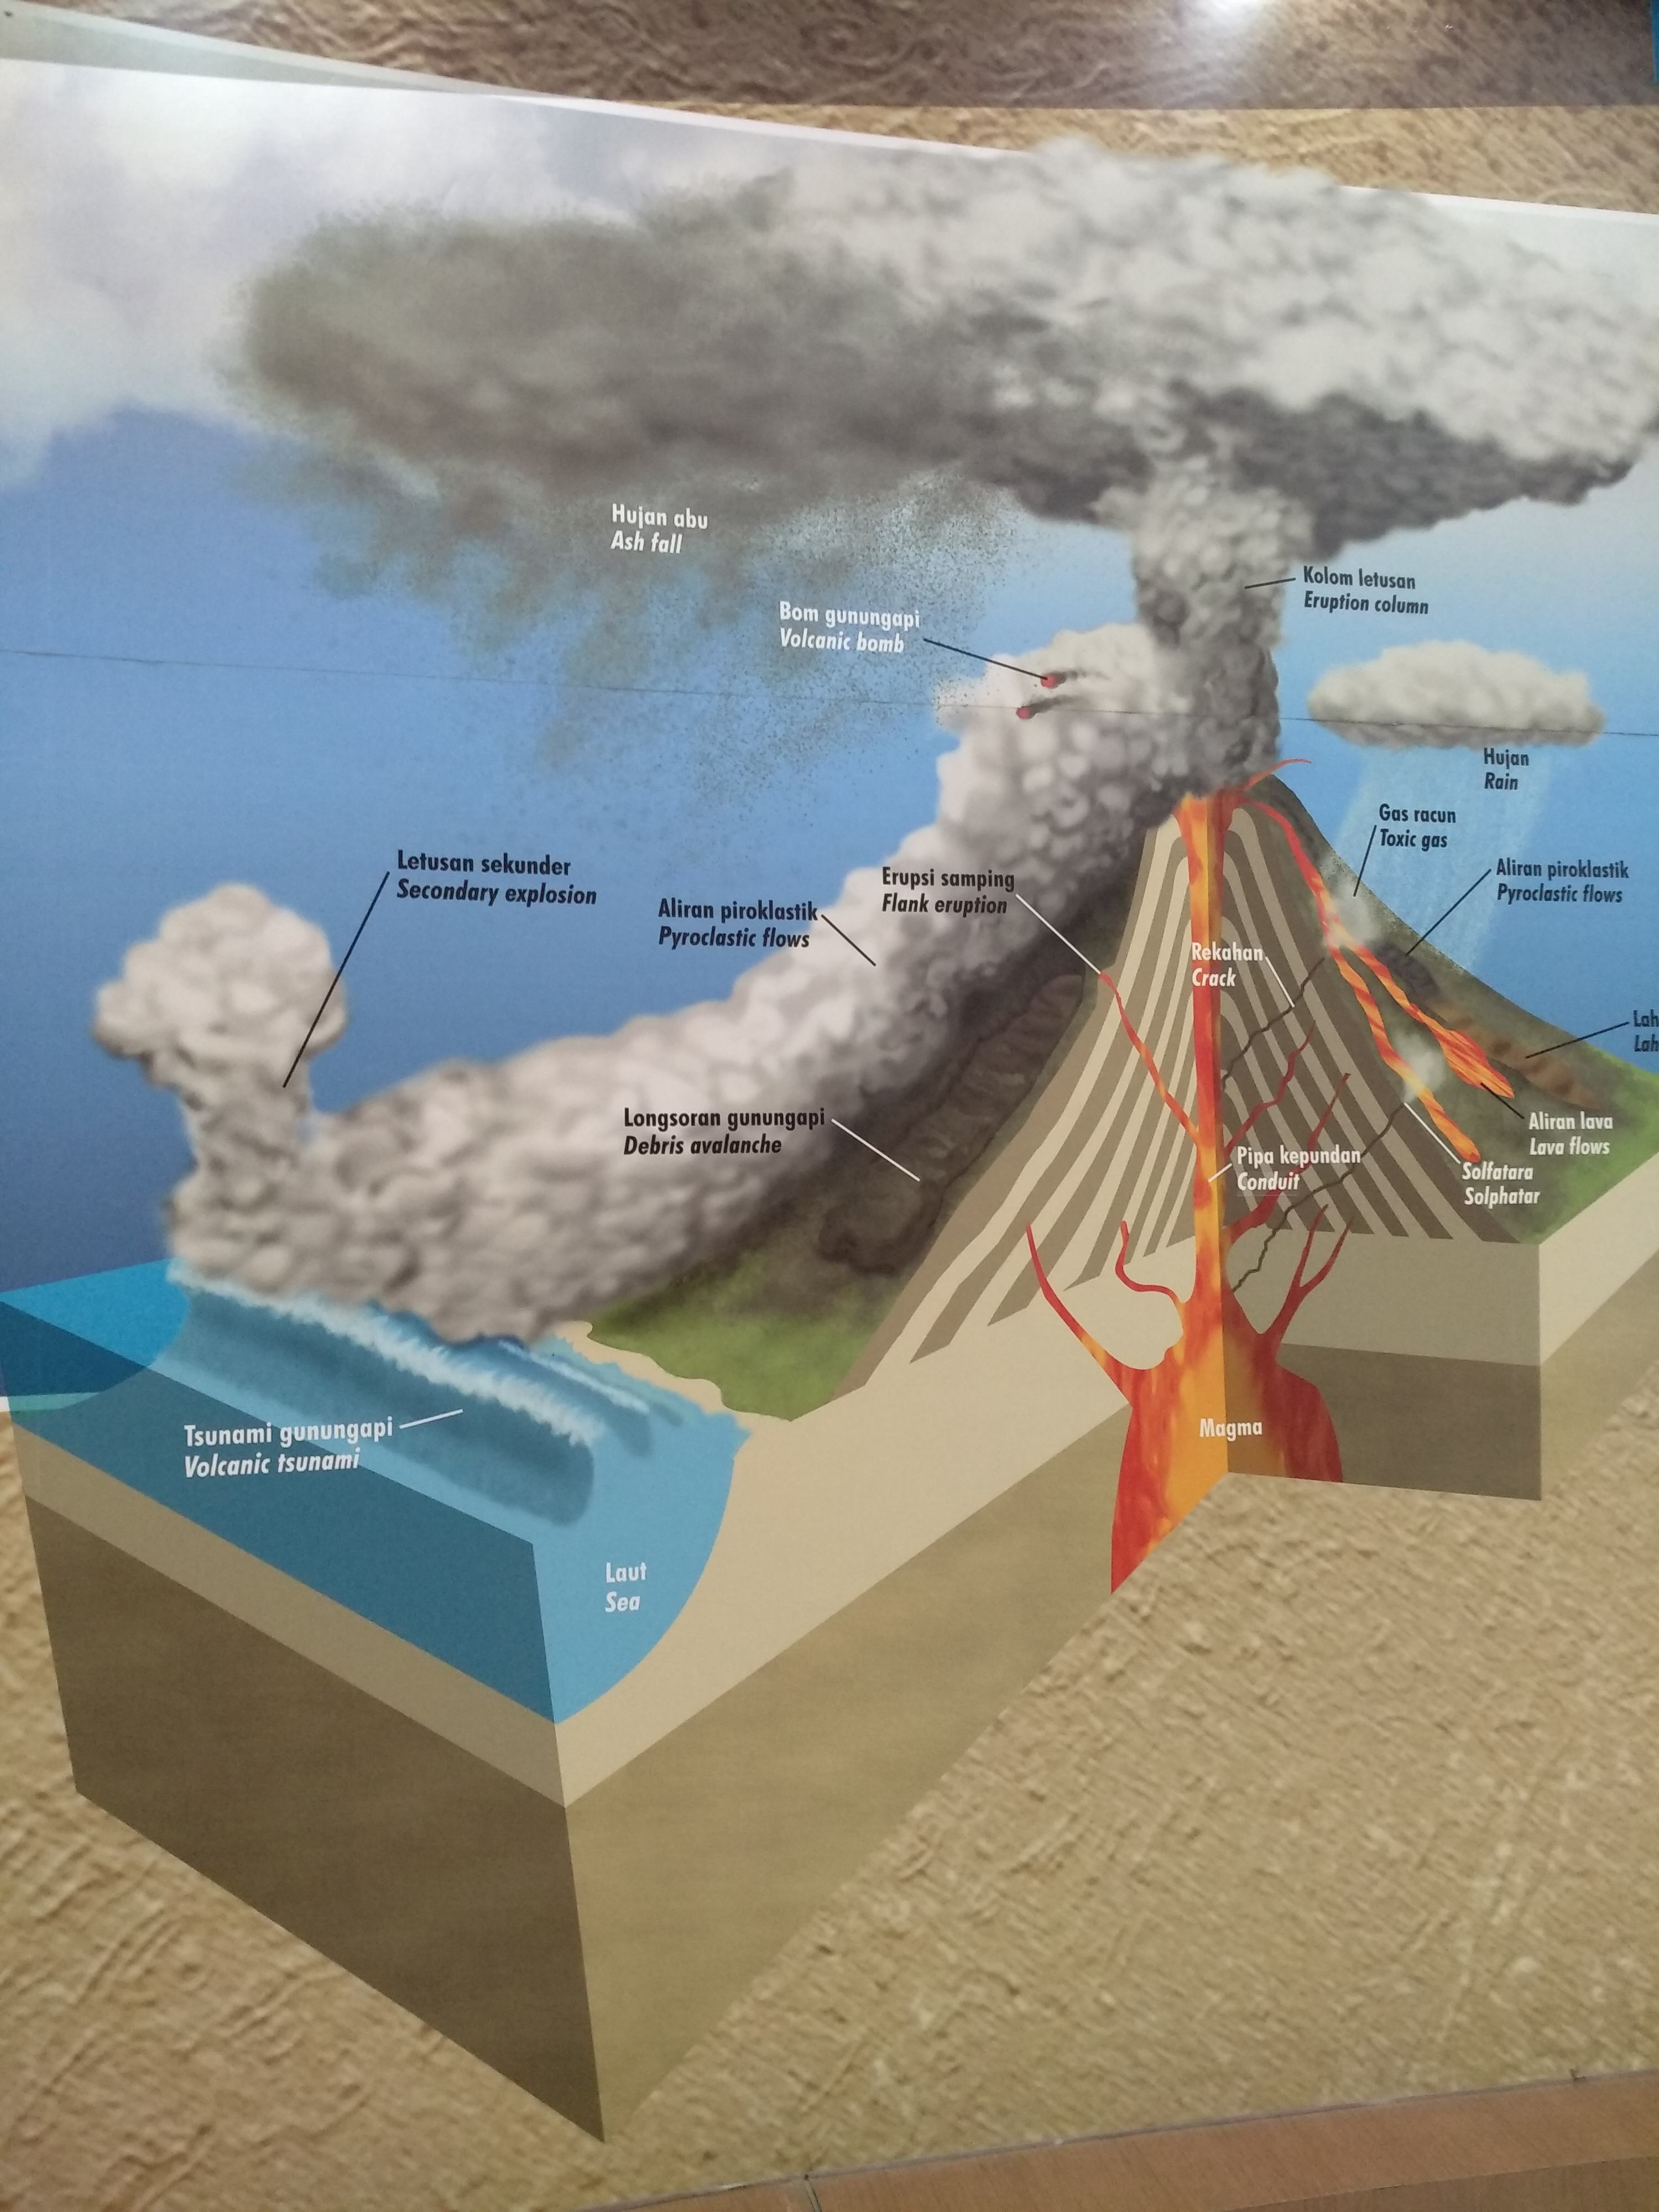 Suatu proses magma yang akan keluar melalui kepundan tersumbat yang menyebabkan permukaan bumi bergetar disebut gempa